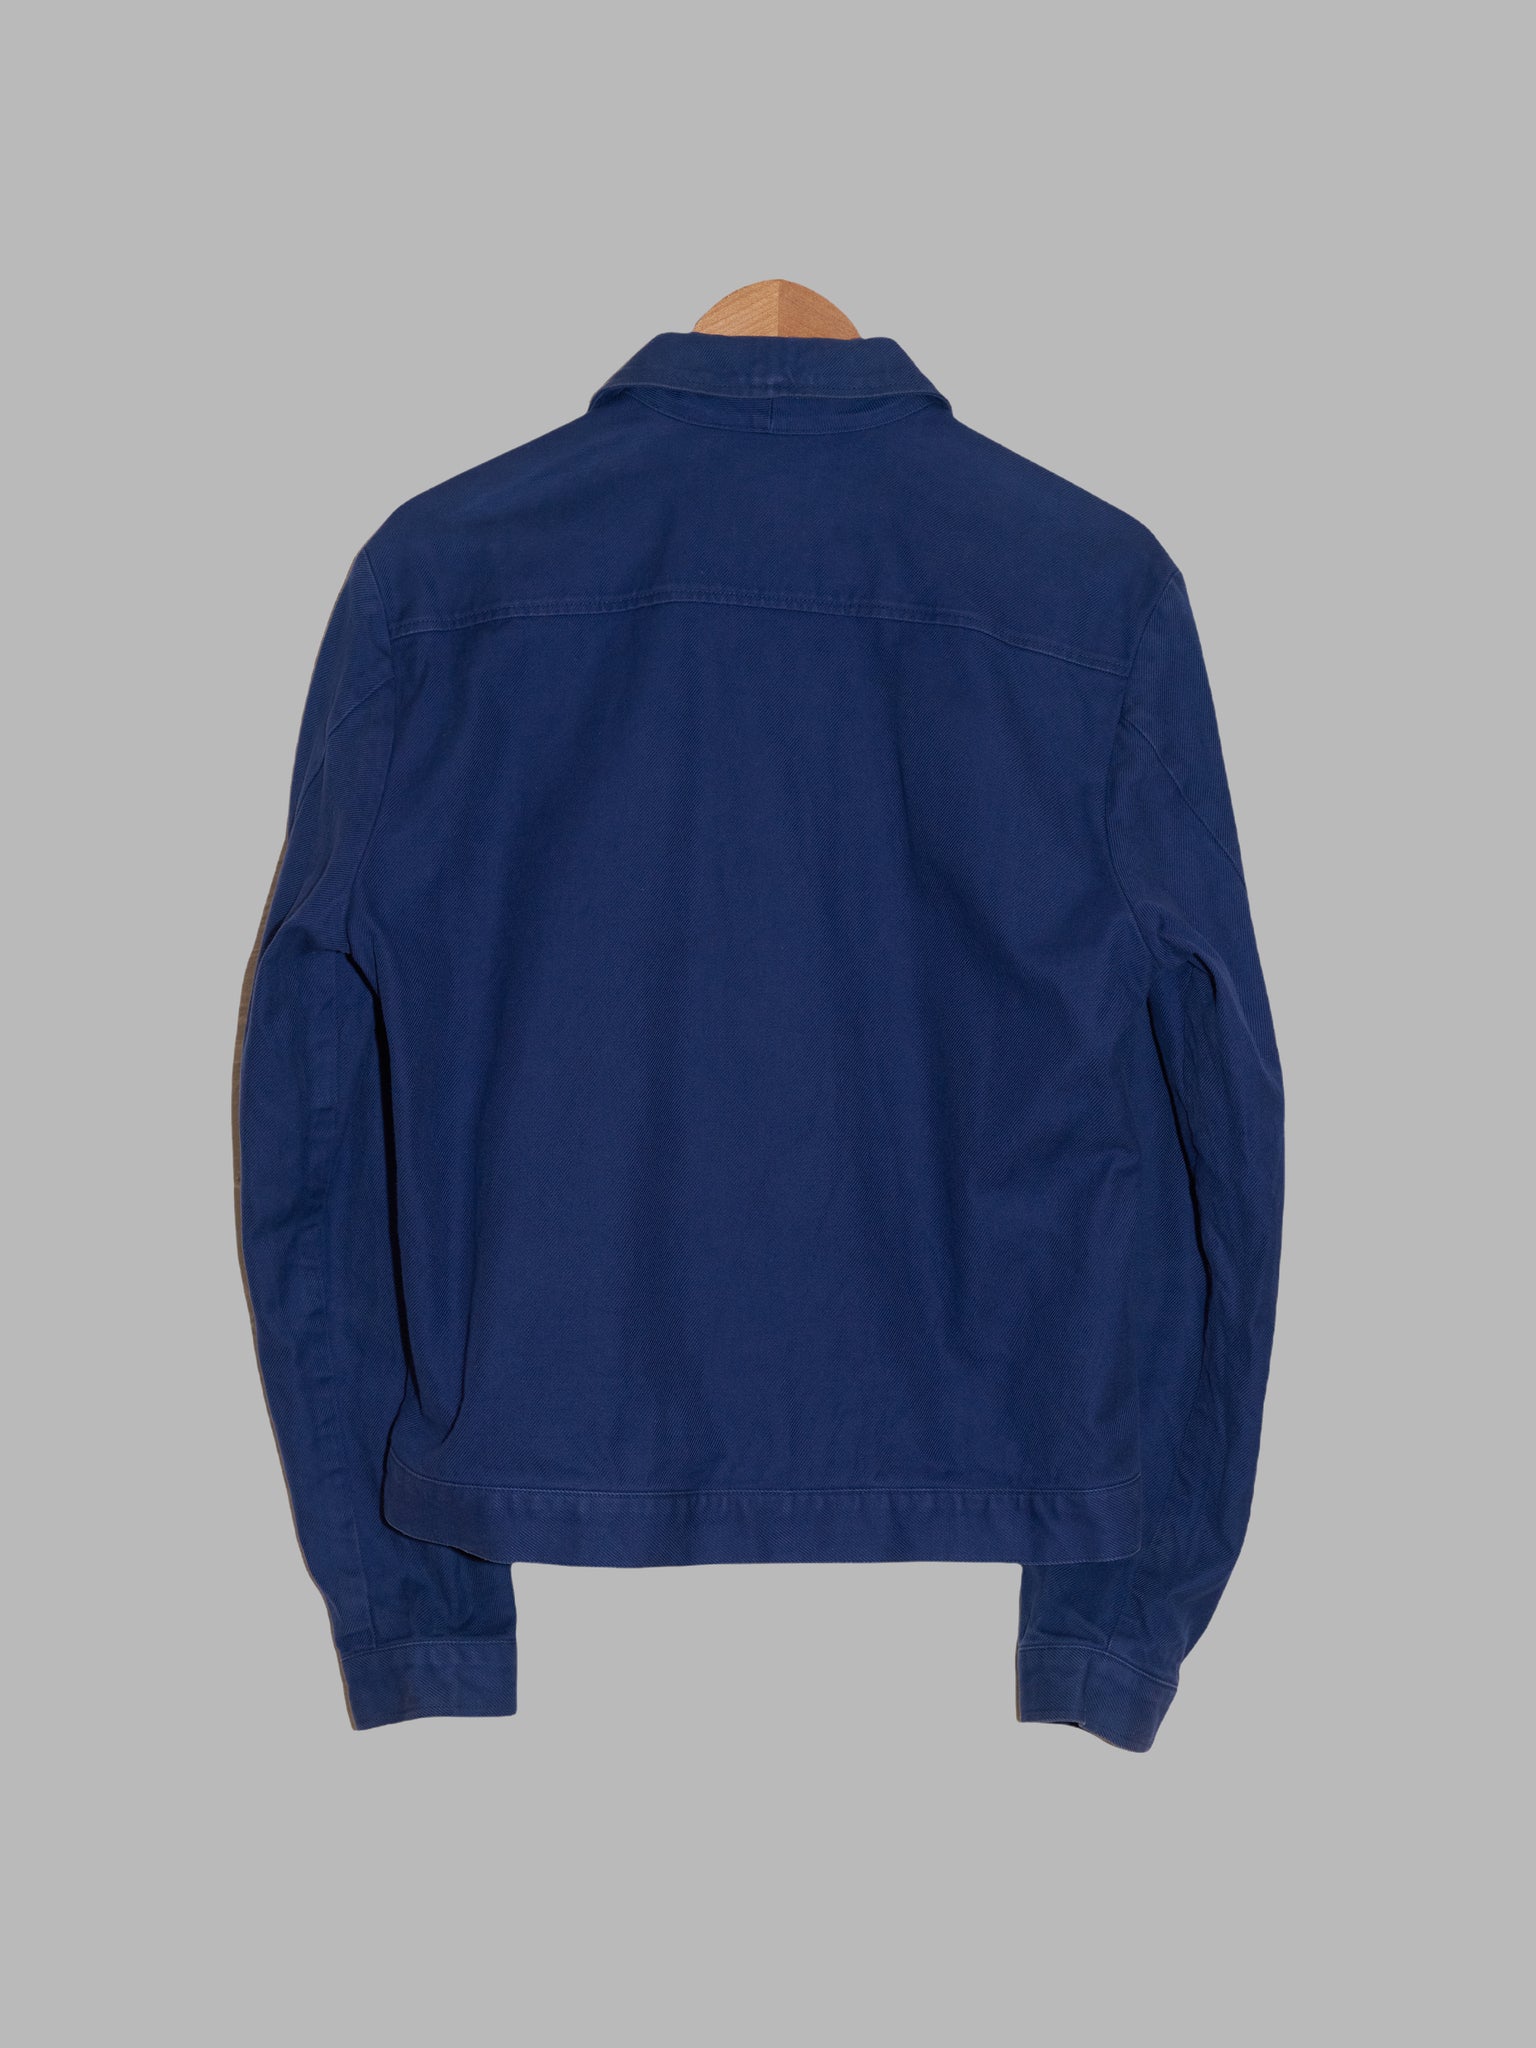 Jose Levy a Paris 1990s blue cotton work jacket - size M S